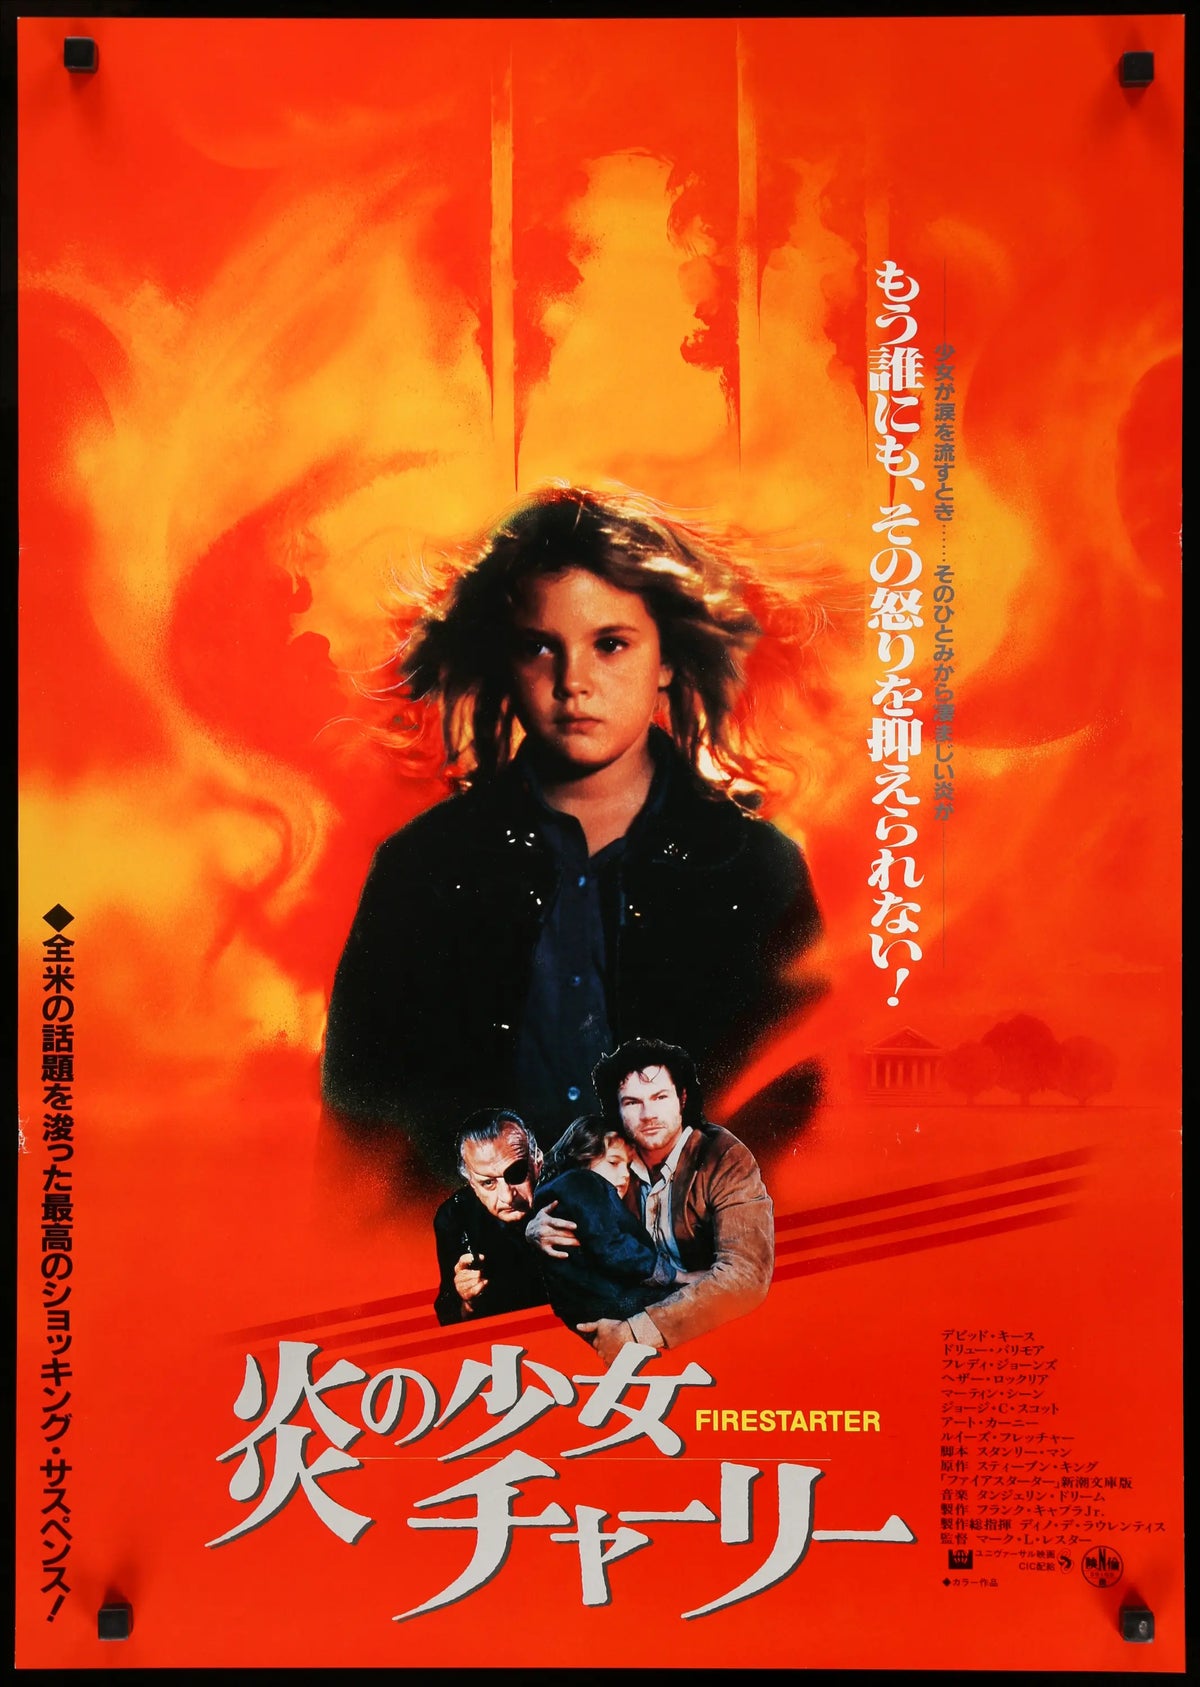 Firestarter (1984) original movie poster for sale at Original Film Art